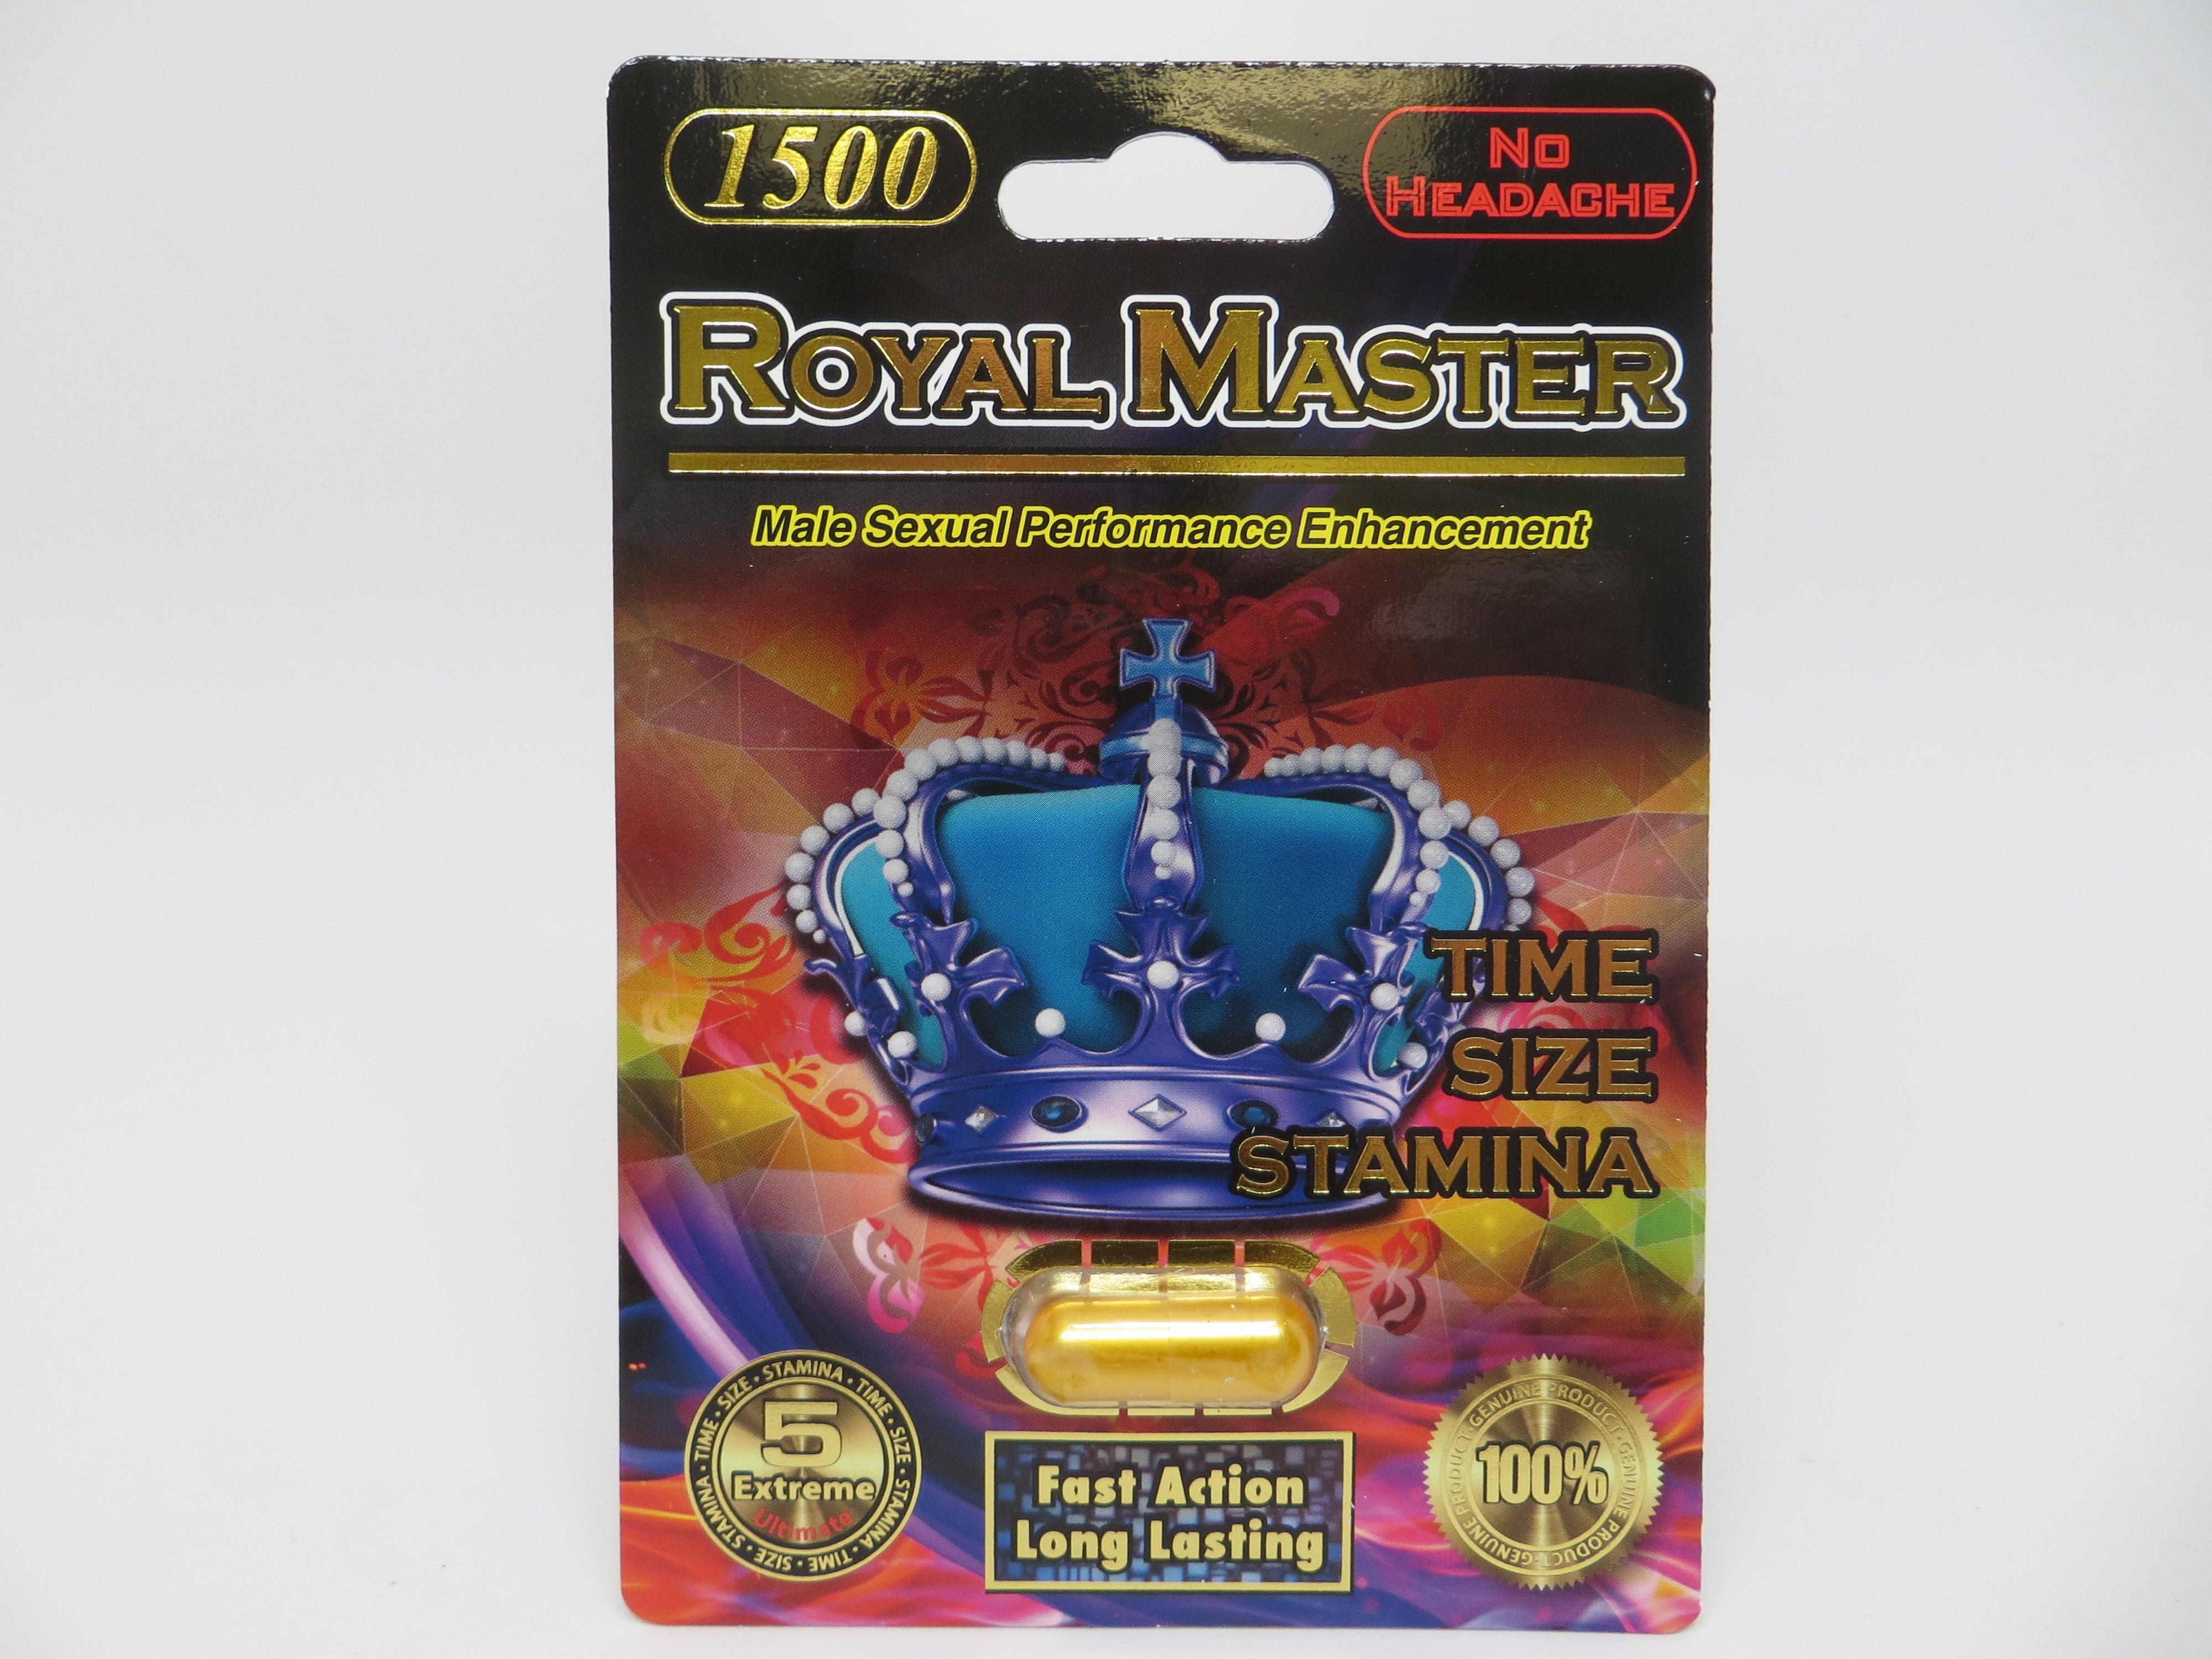 Billede af det ulovlige produkt: Royal Master 1500